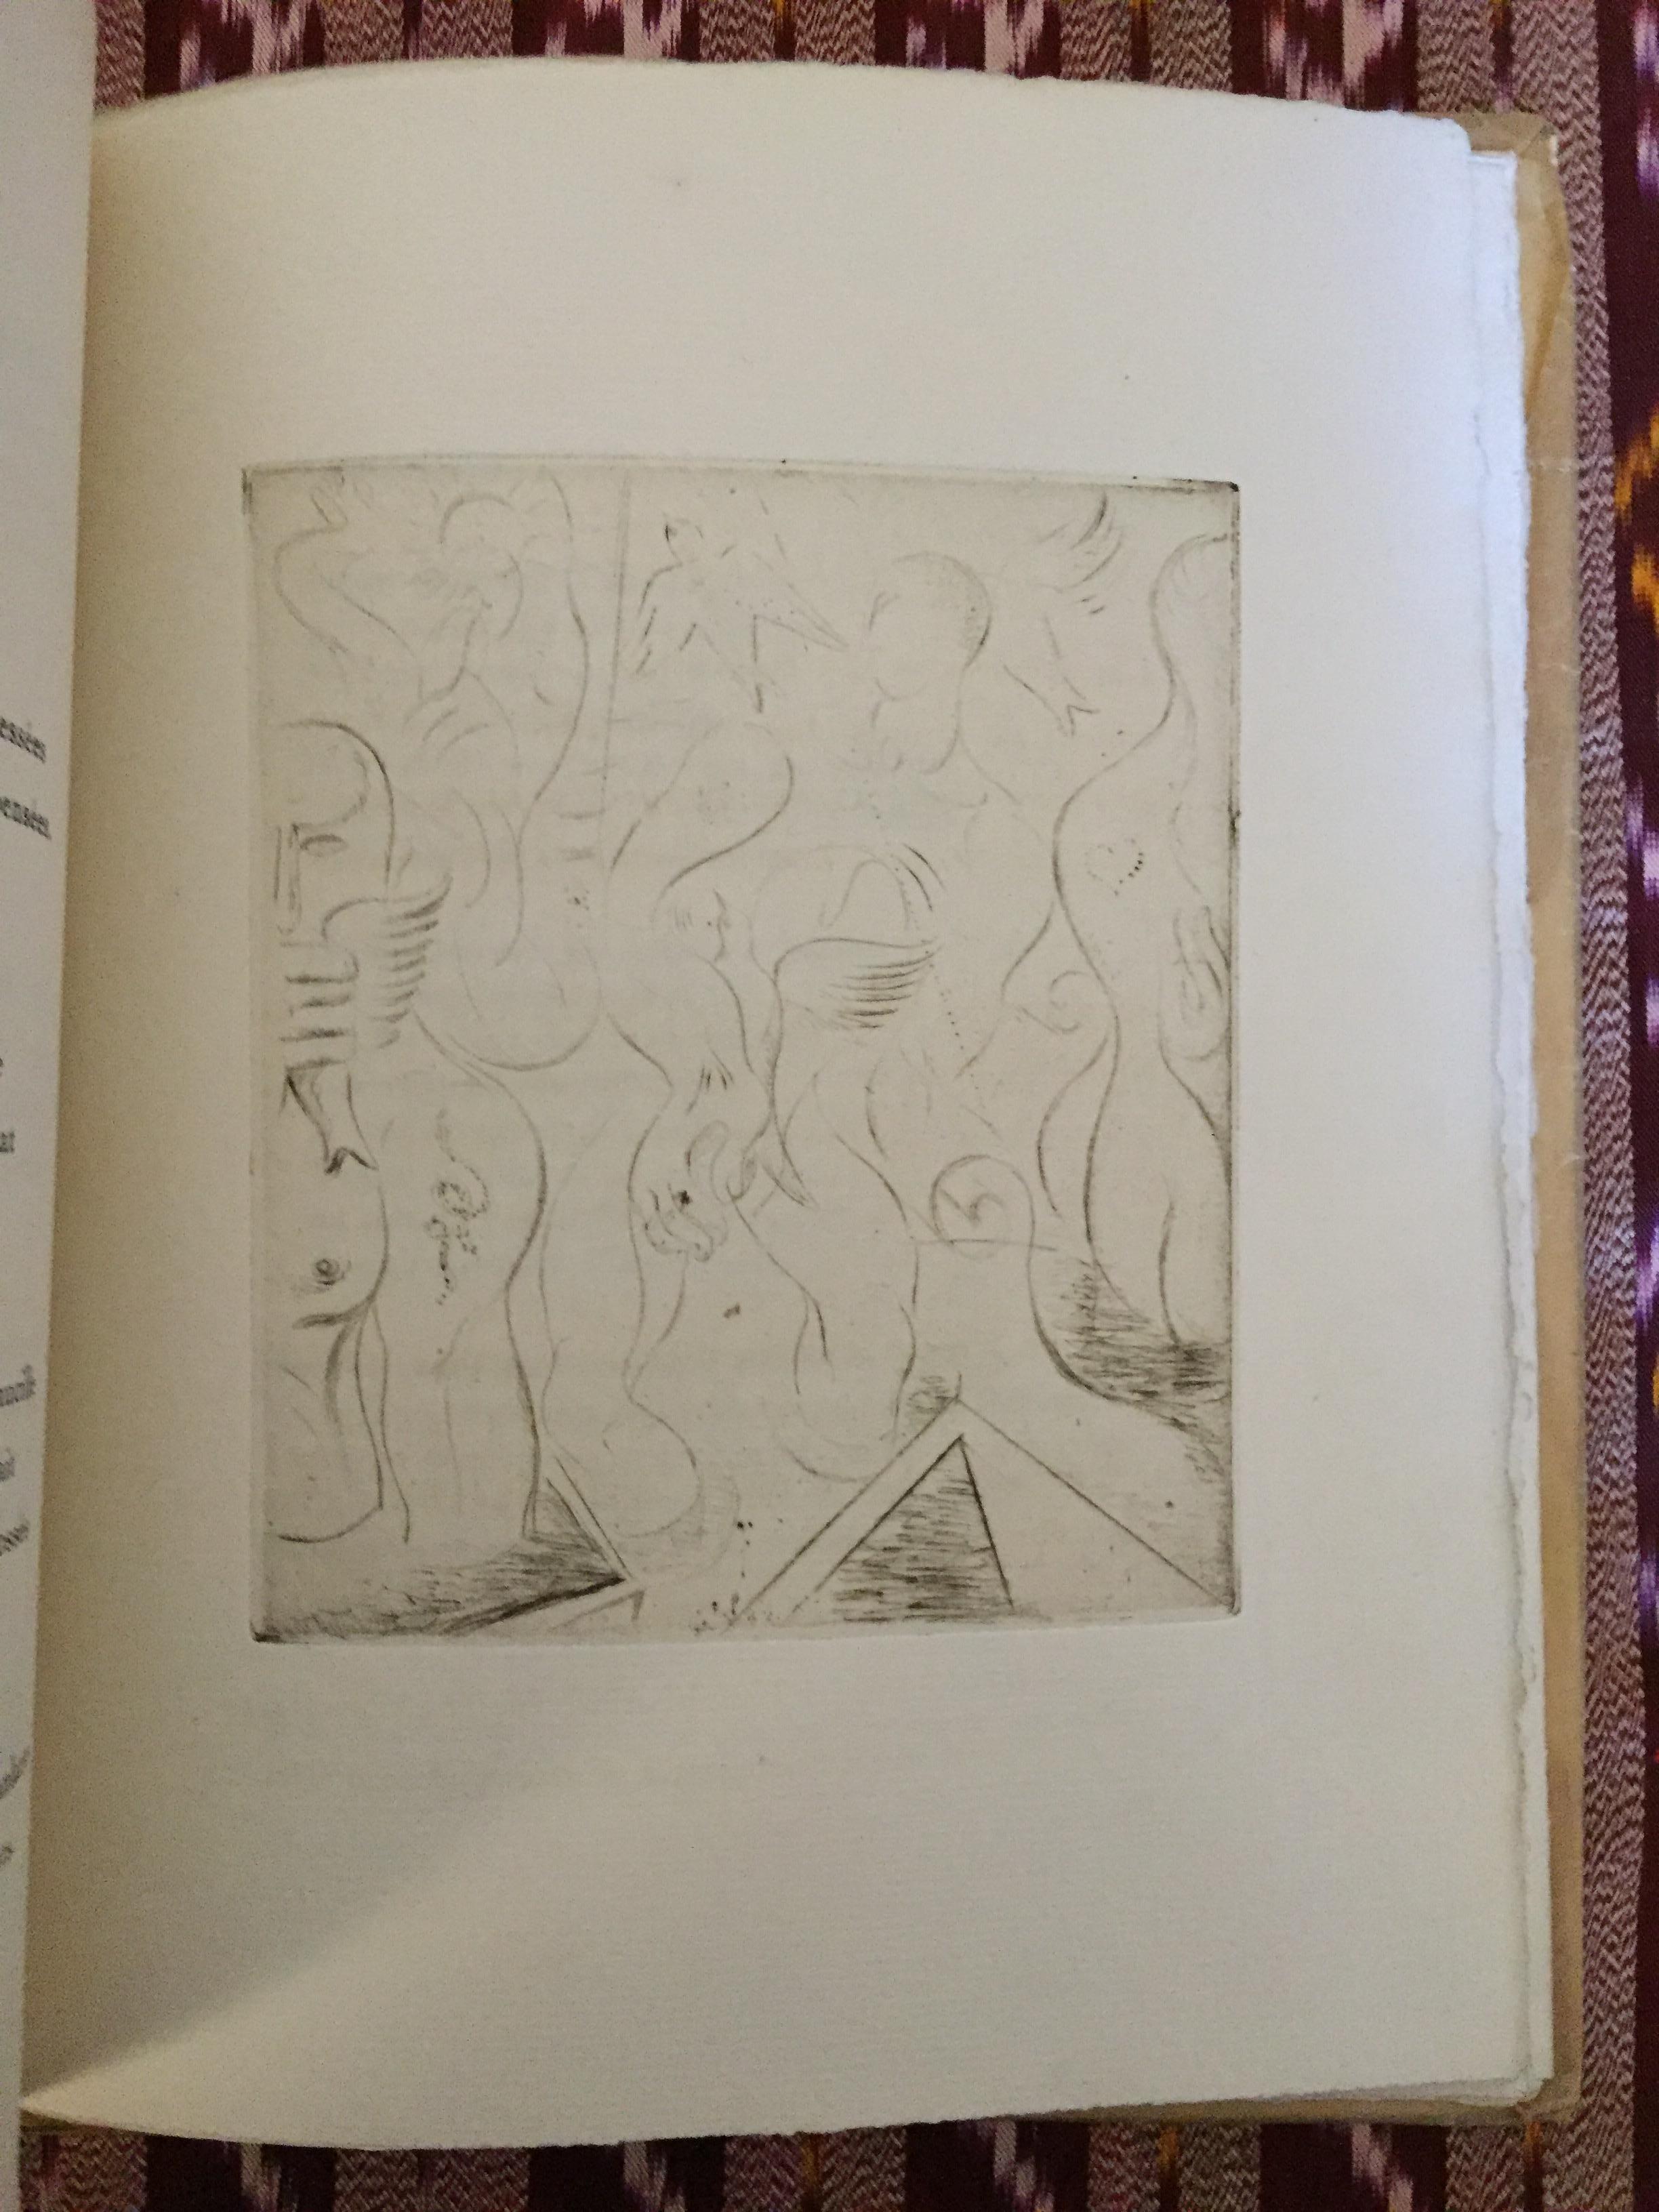 Édition de 112 exemplaires comprenant 4 gravures originales de l'artiste français André Masson. 

Cette copie sur papier Verge d'Arches.

Edition : Galerie Simon, Paris

Pages : 15

Bon état.